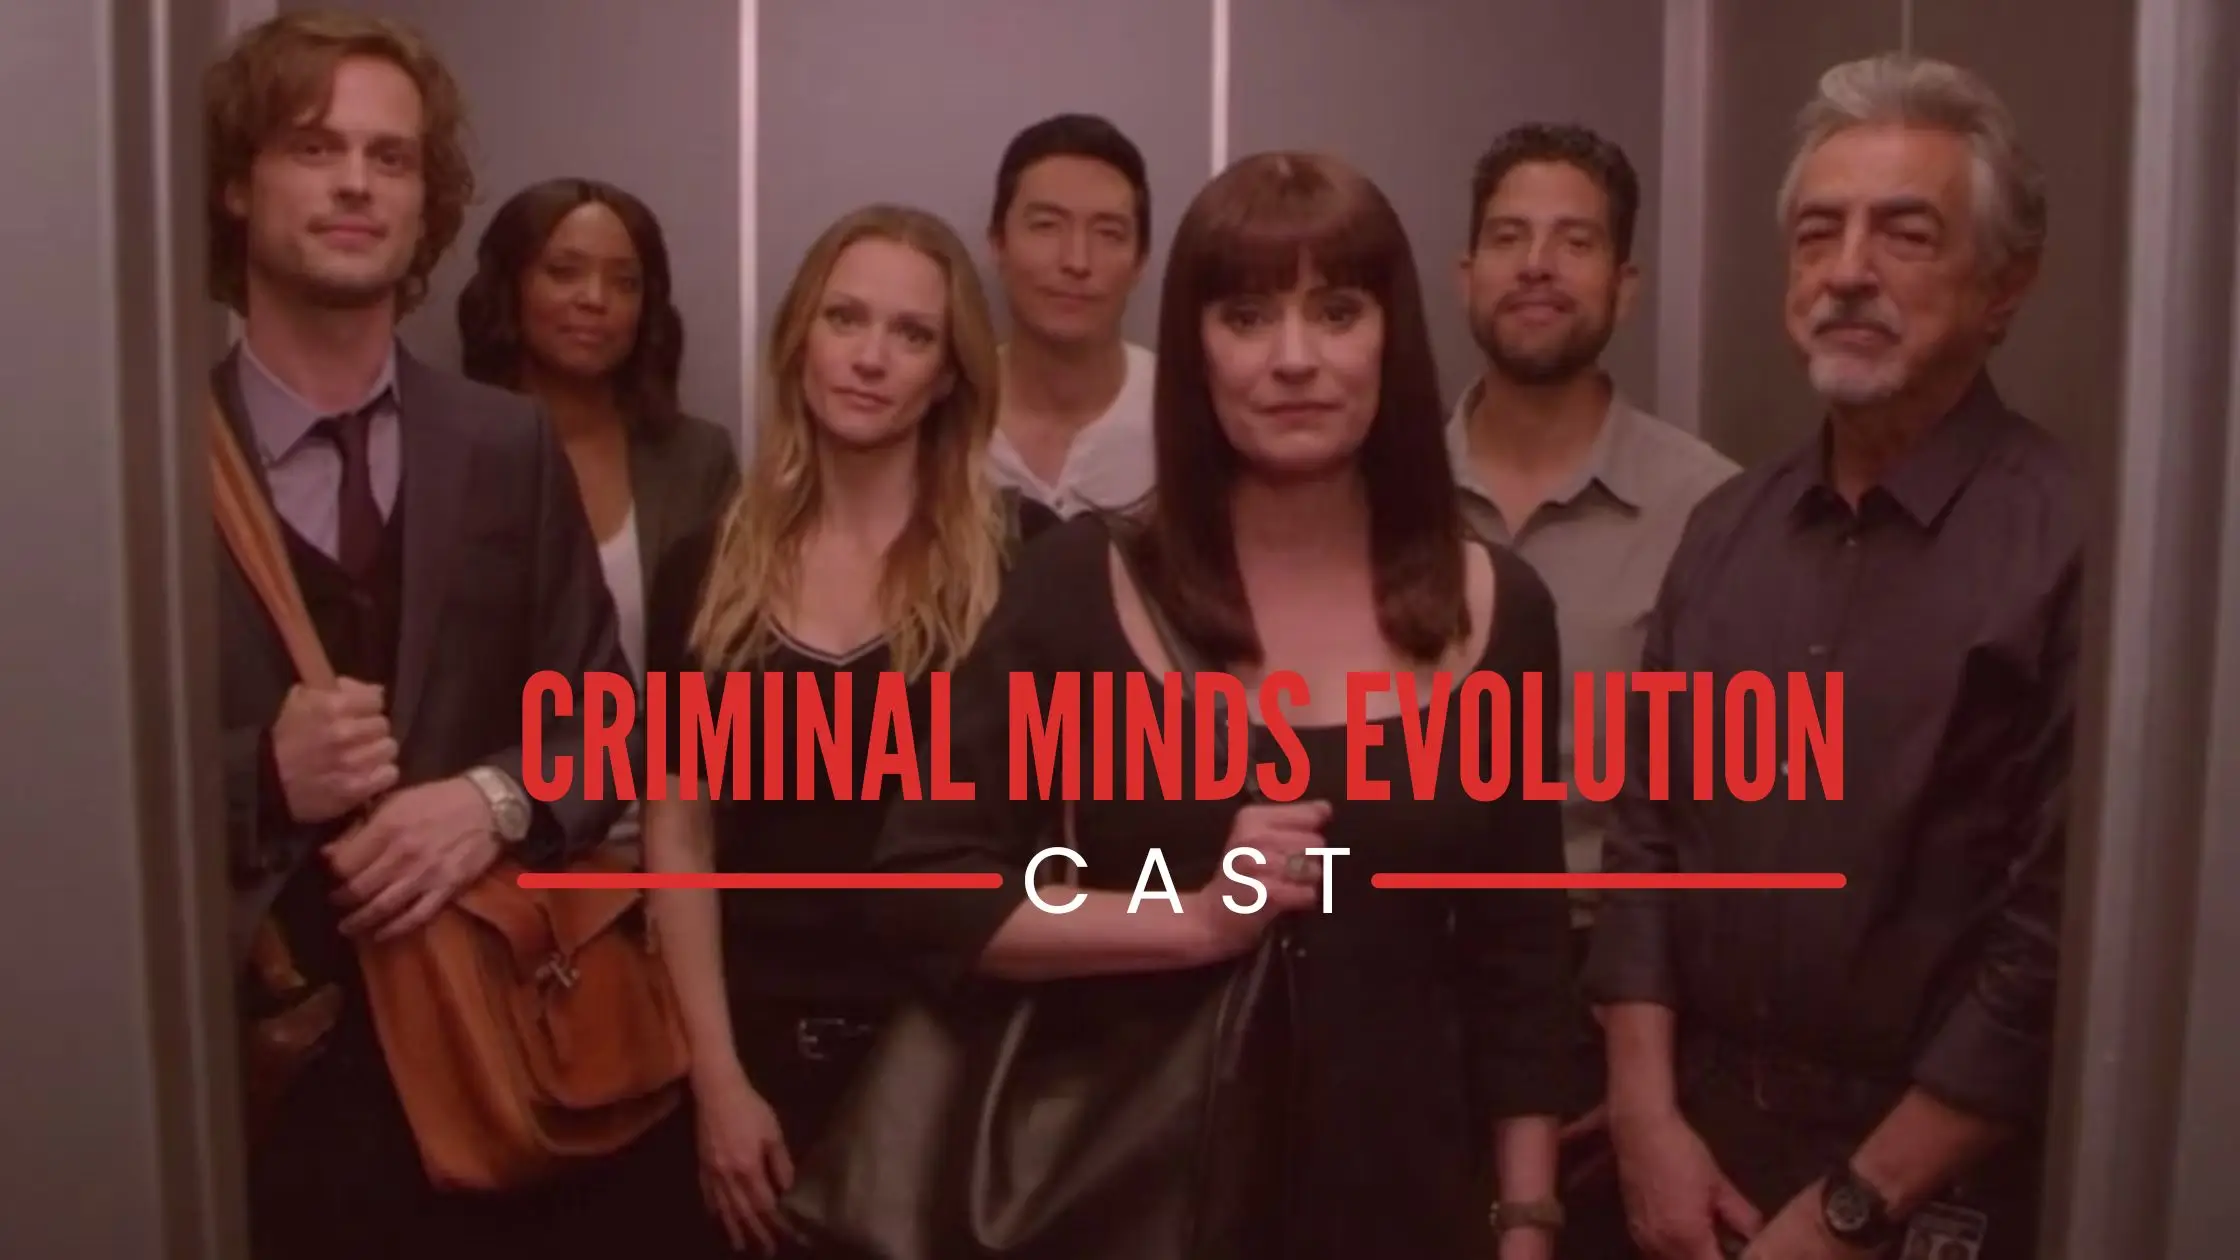 Criminal minds evolution cast